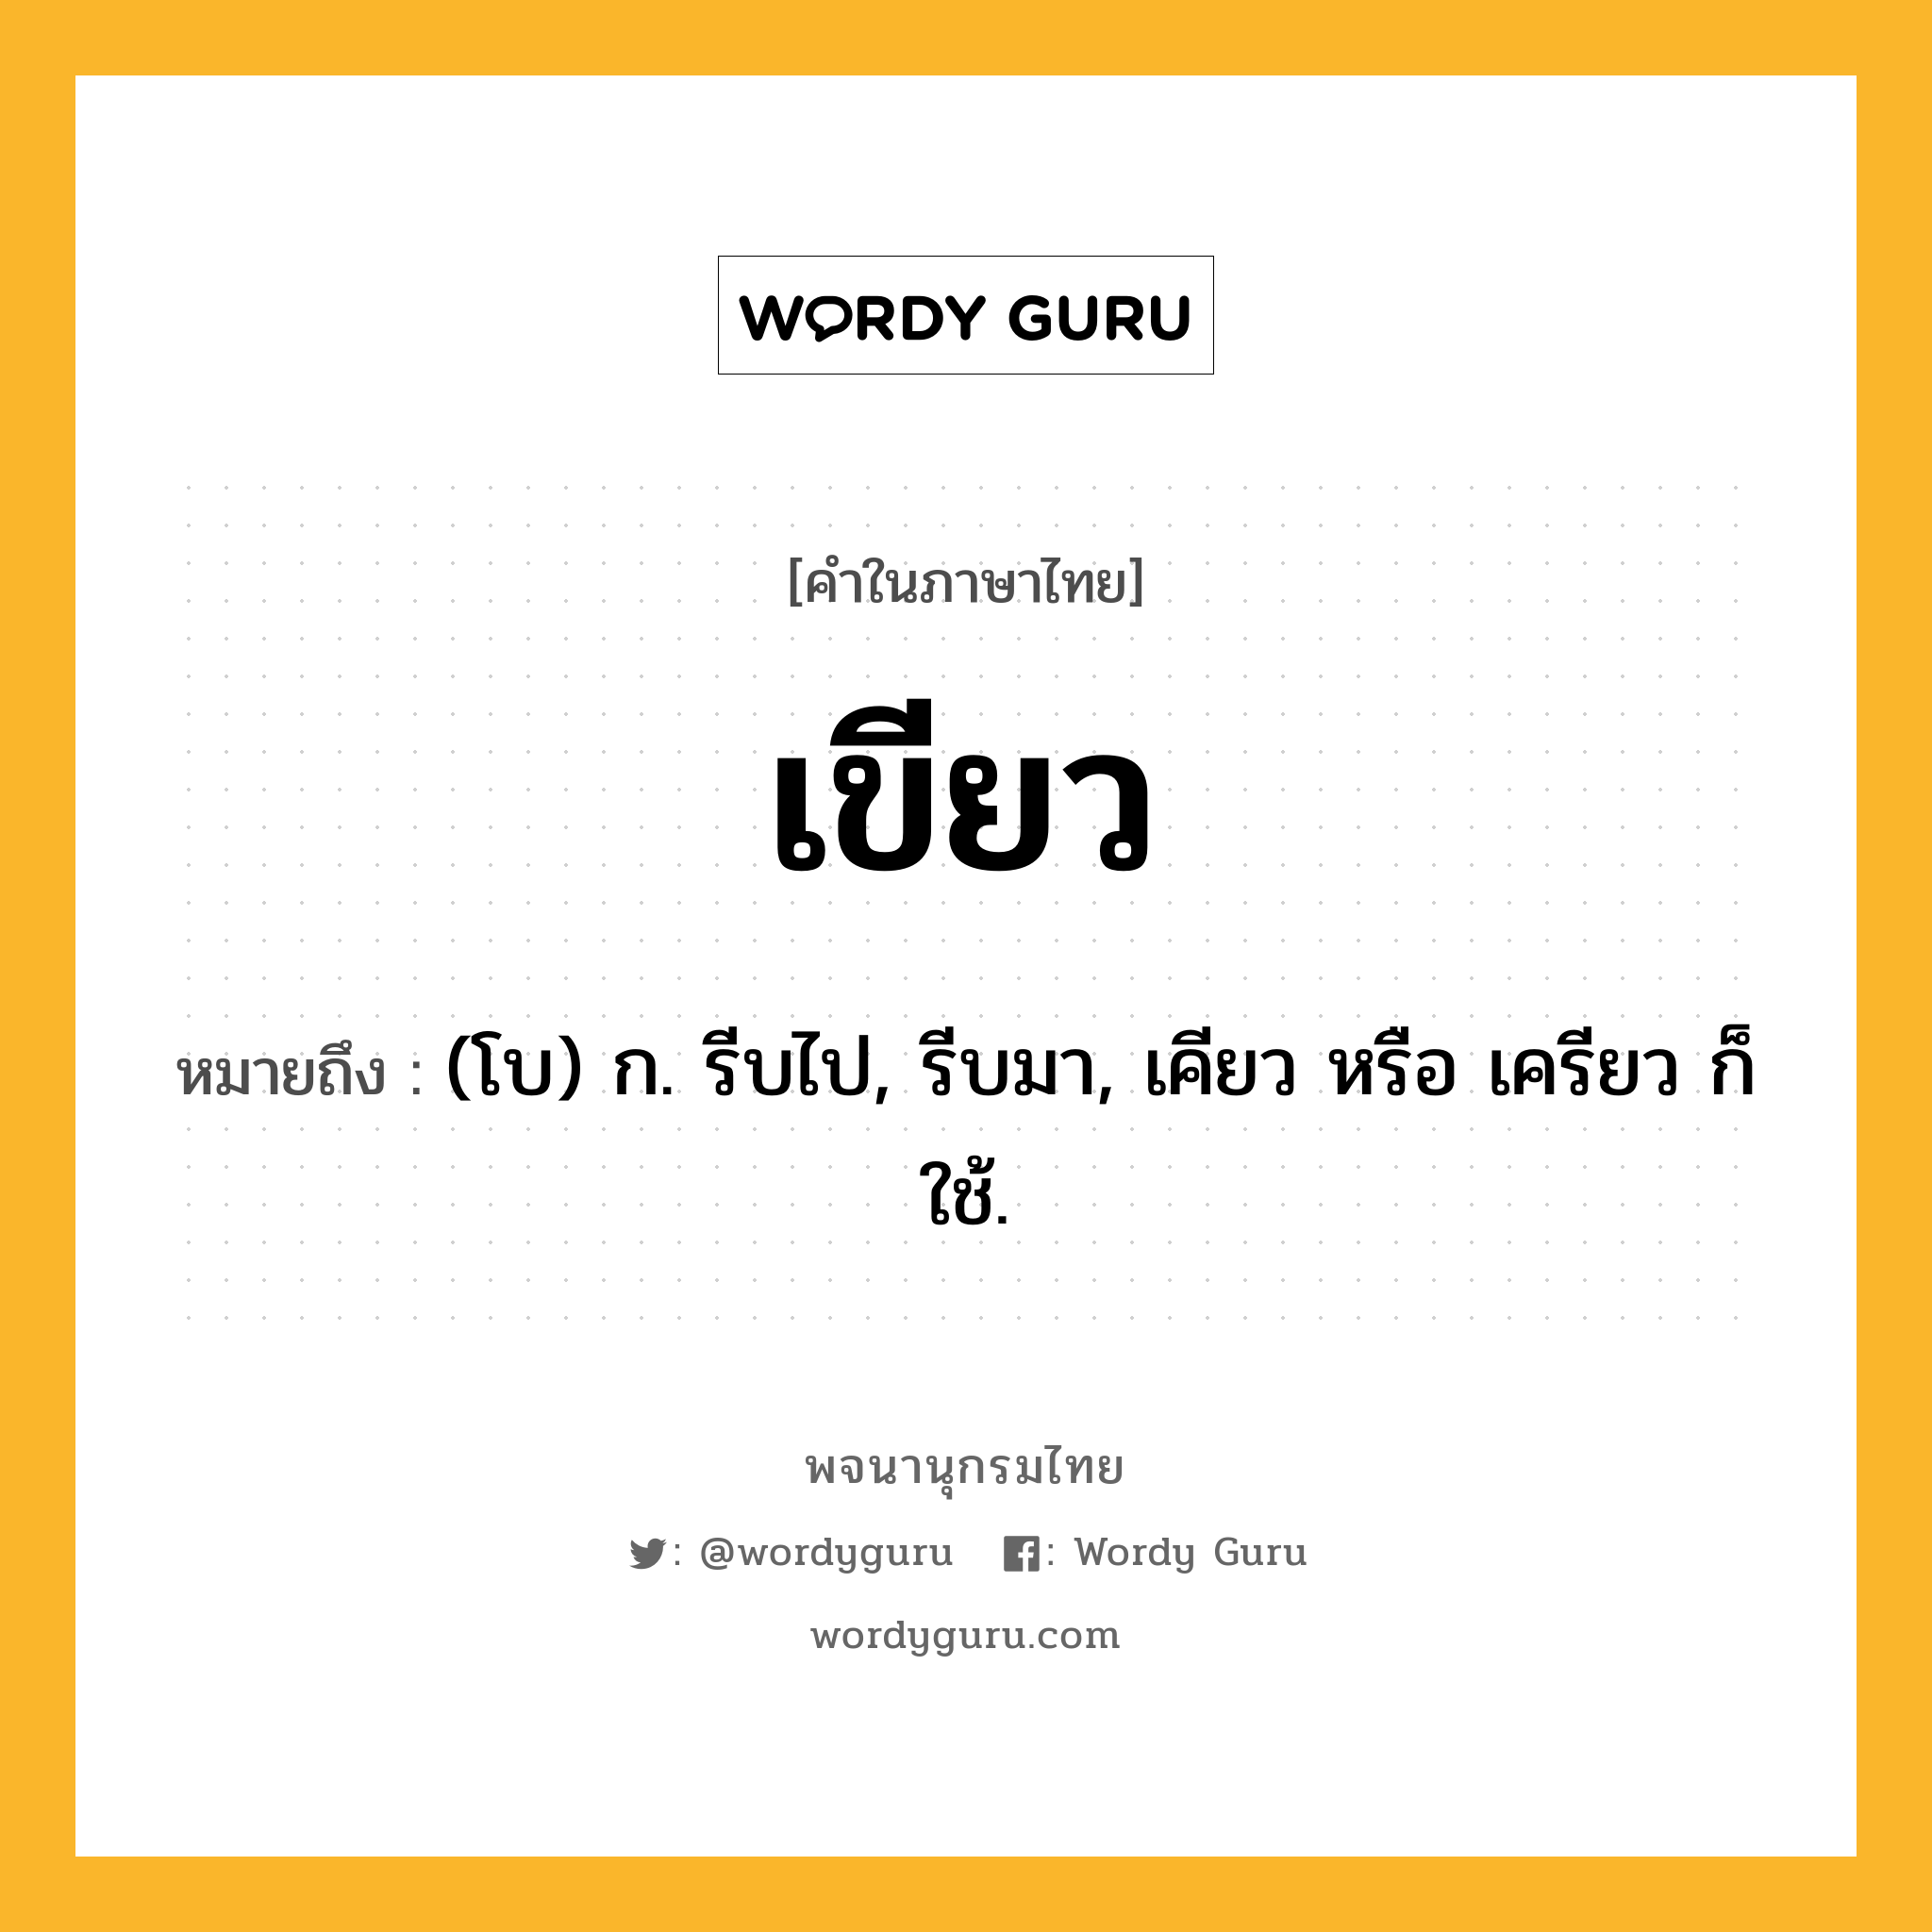 เขียว ความหมาย หมายถึงอะไร?, คำในภาษาไทย เขียว หมายถึง (โบ) ก. รีบไป, รีบมา, เคียว หรือ เครียว ก็ใช้.